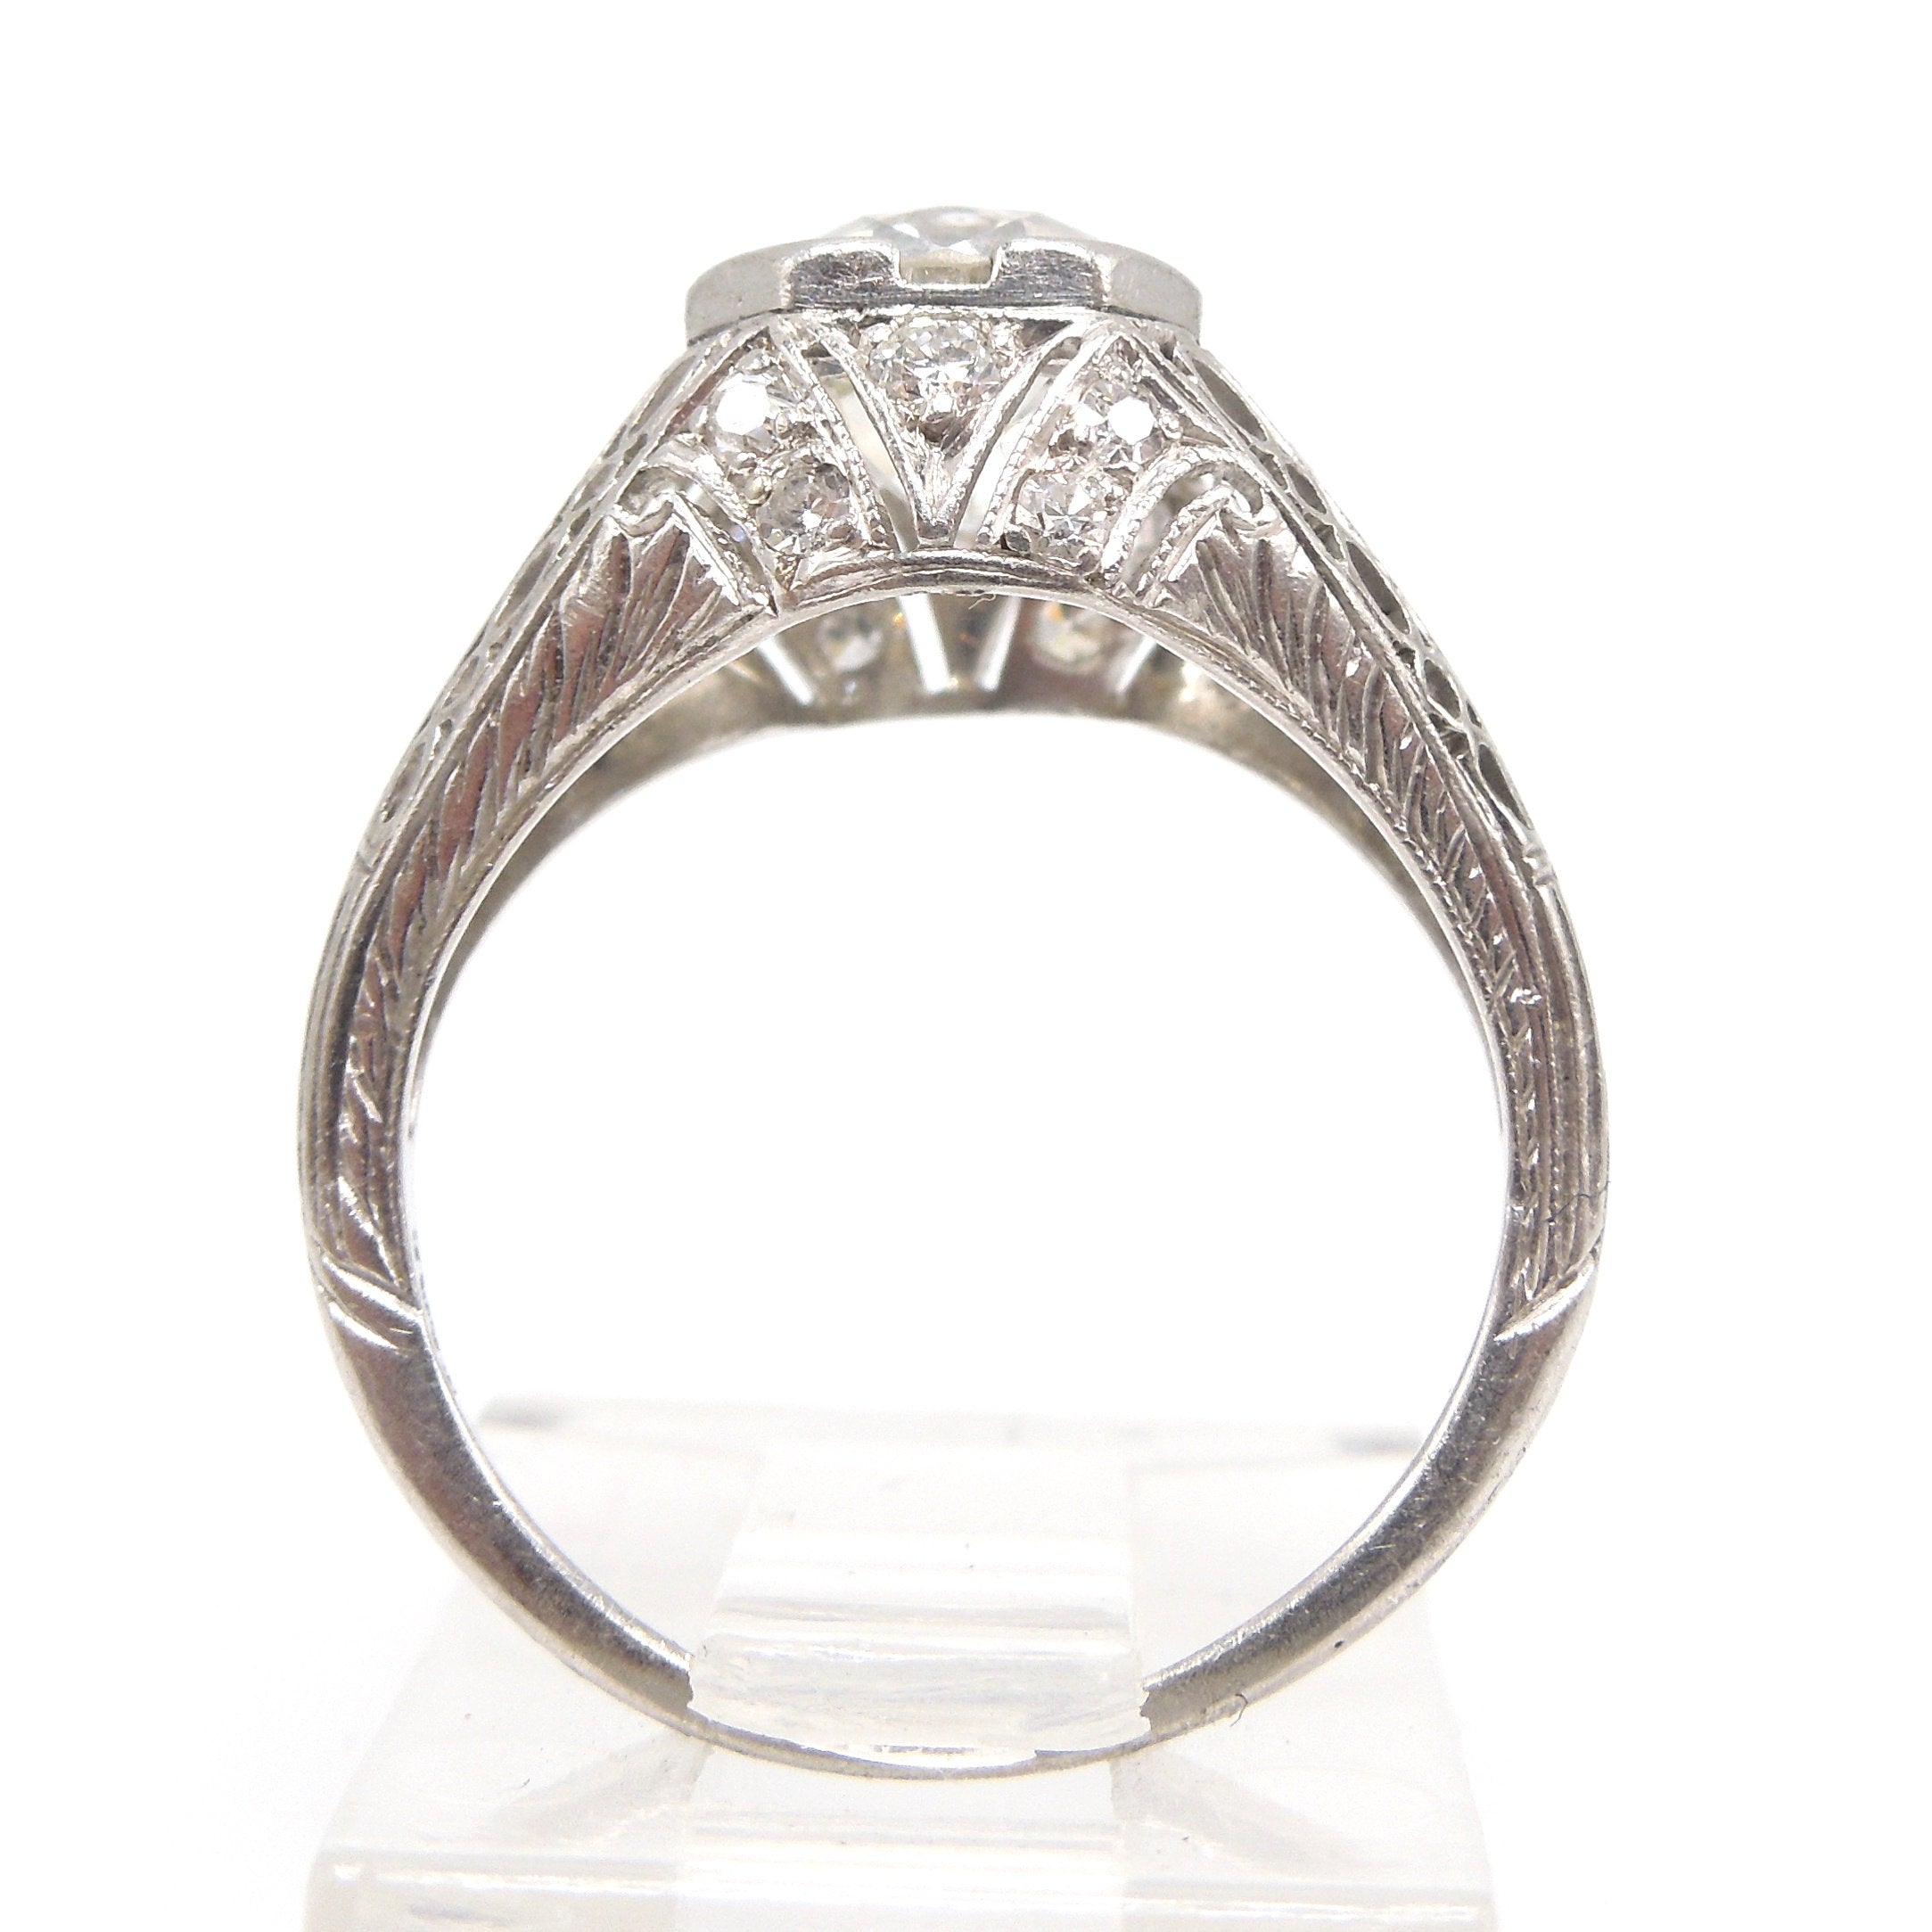 Original 1.47ct European Cut Diamond Art Deco Engagement Ring in Platinum